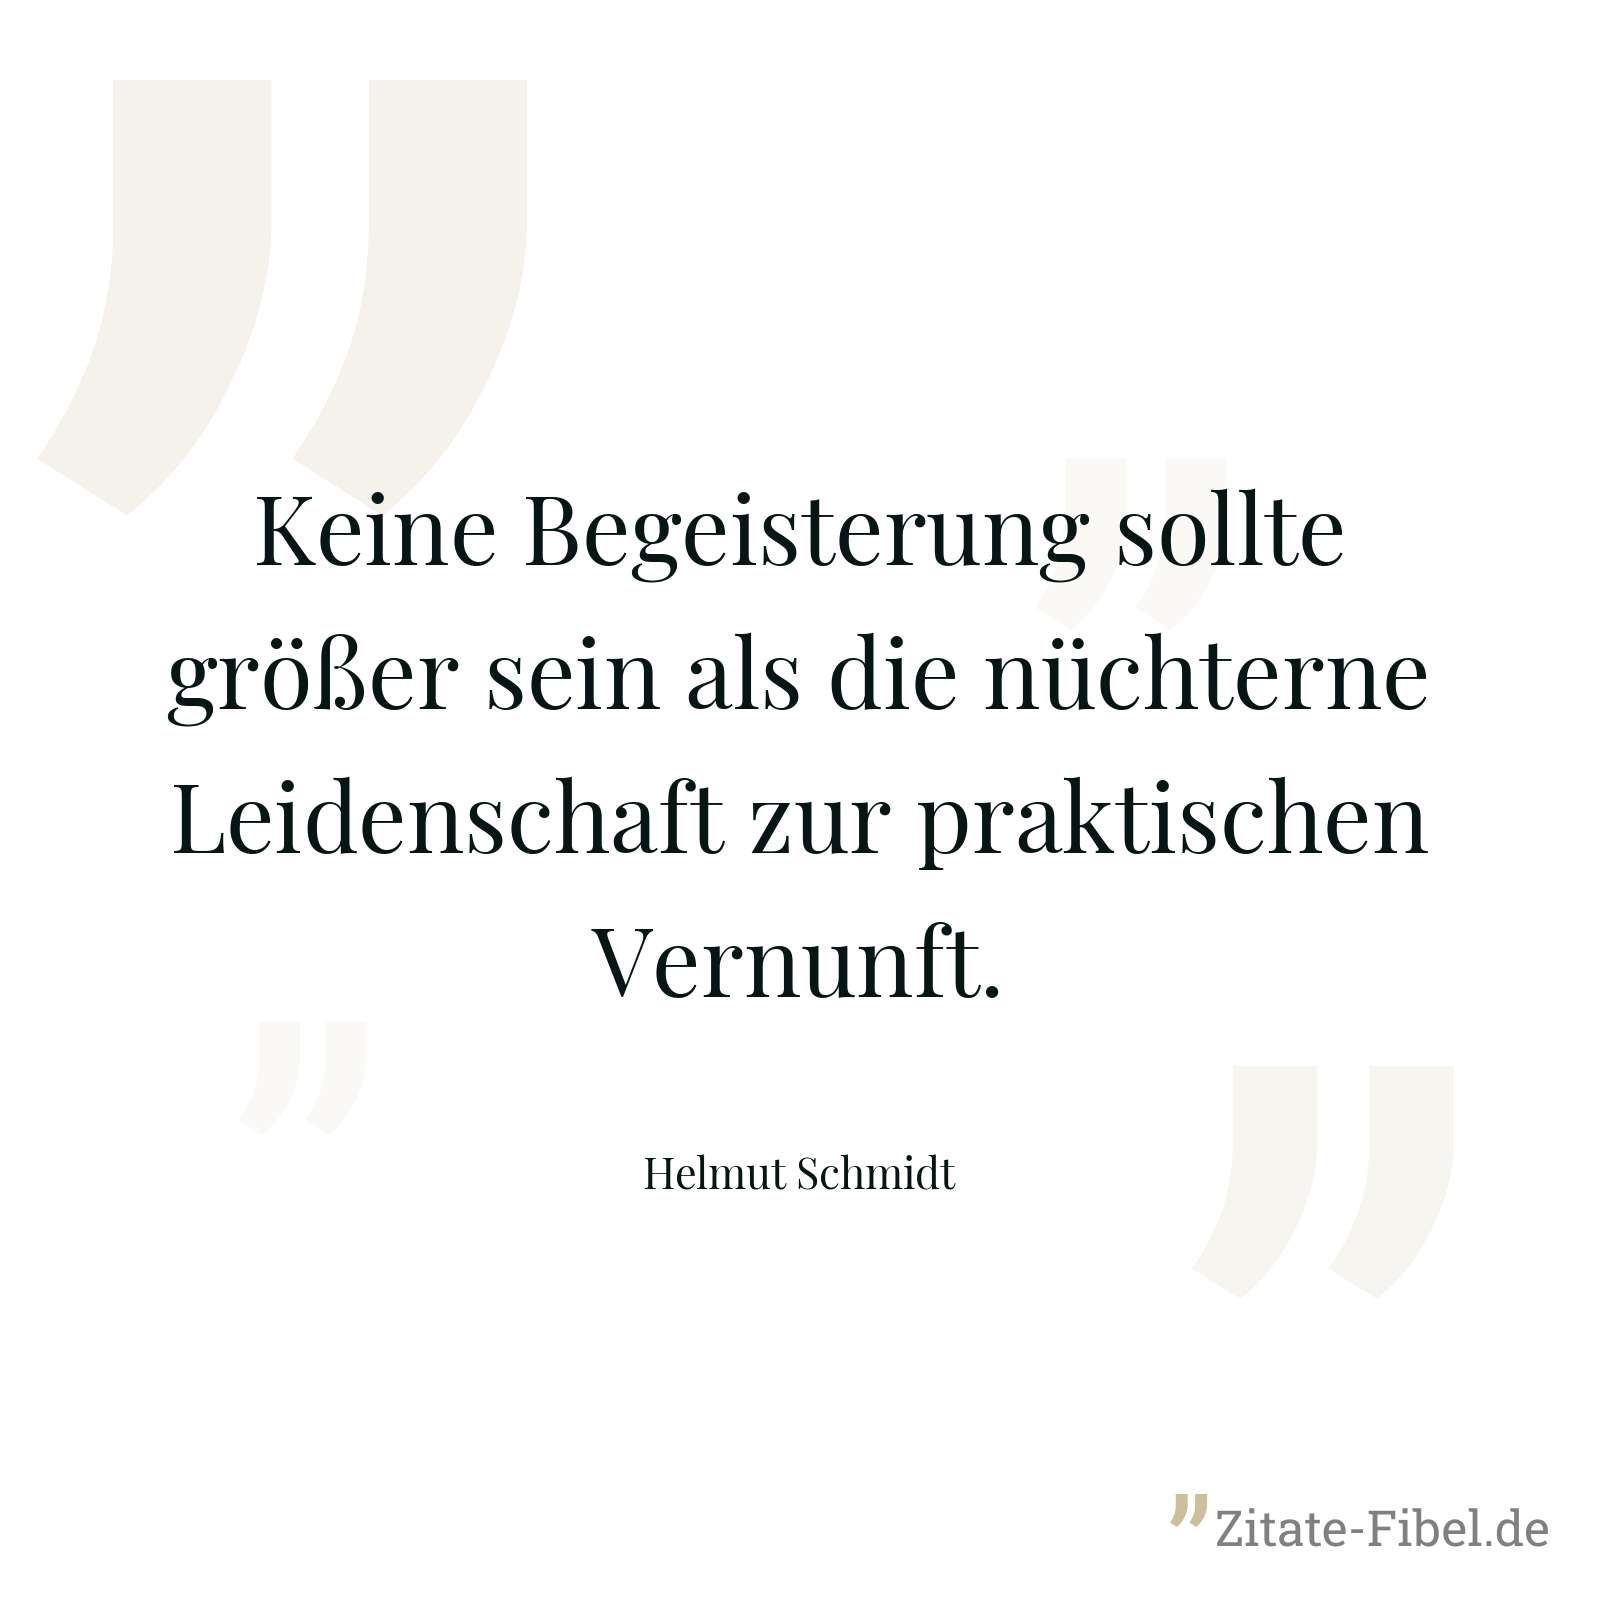 Keine Begeisterung sollte größer sein als die nüchterne Leidenschaft zur praktischen Vernunft. - Helmut Schmidt